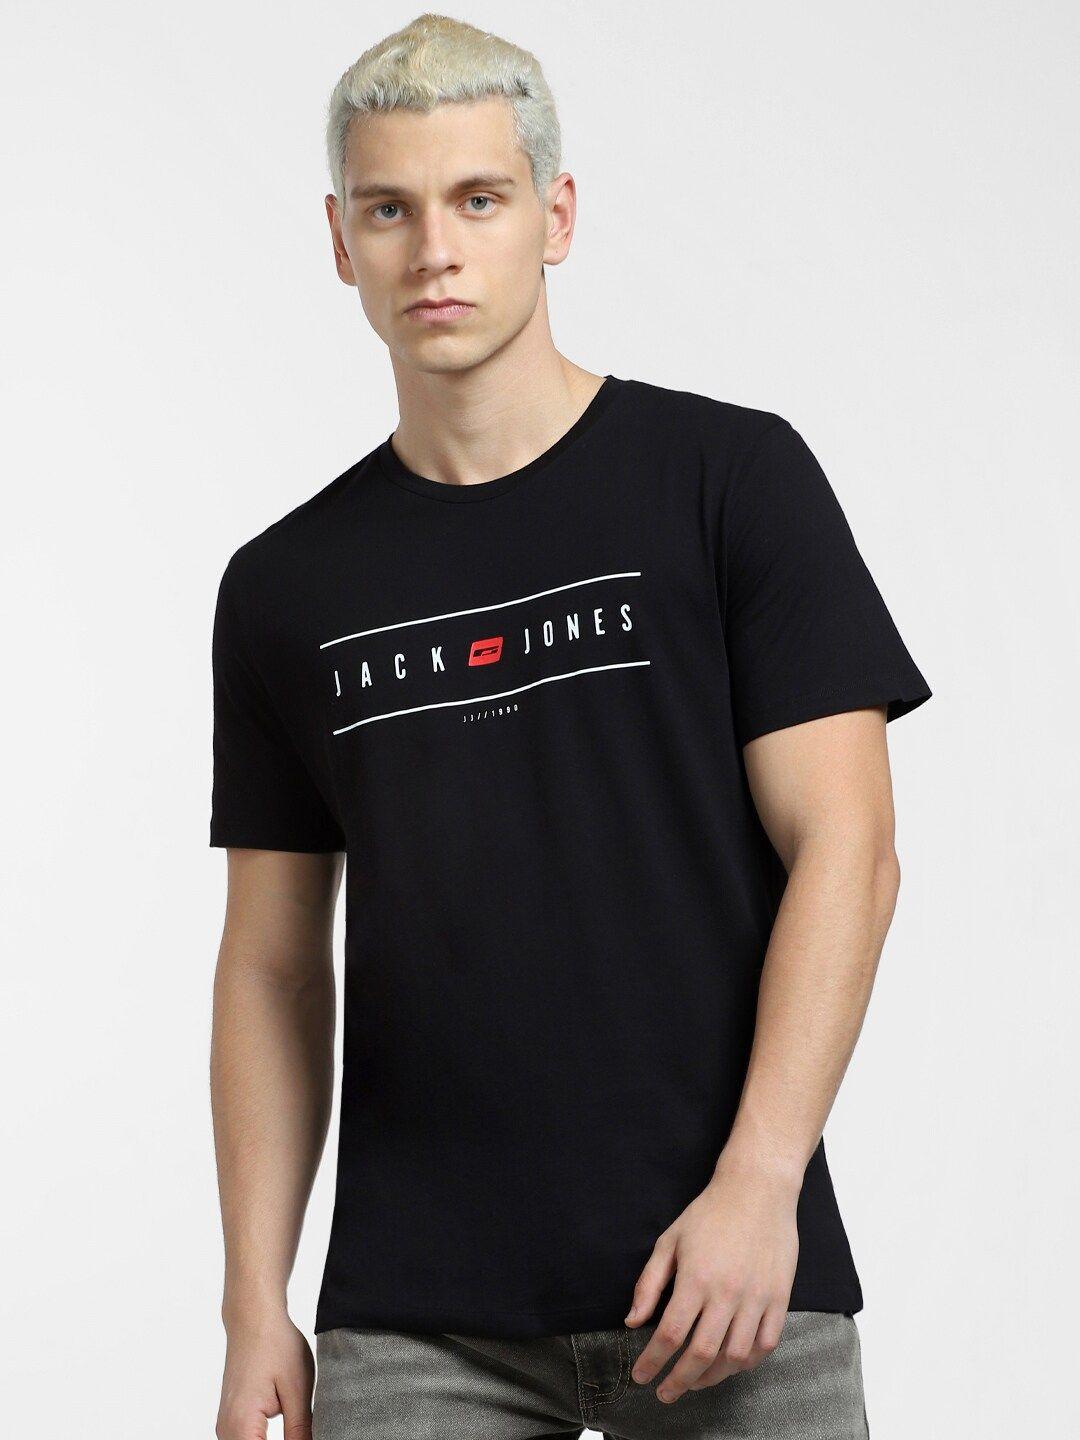 jack & jones men black typography printed v-neck applique slim fit t-shirt